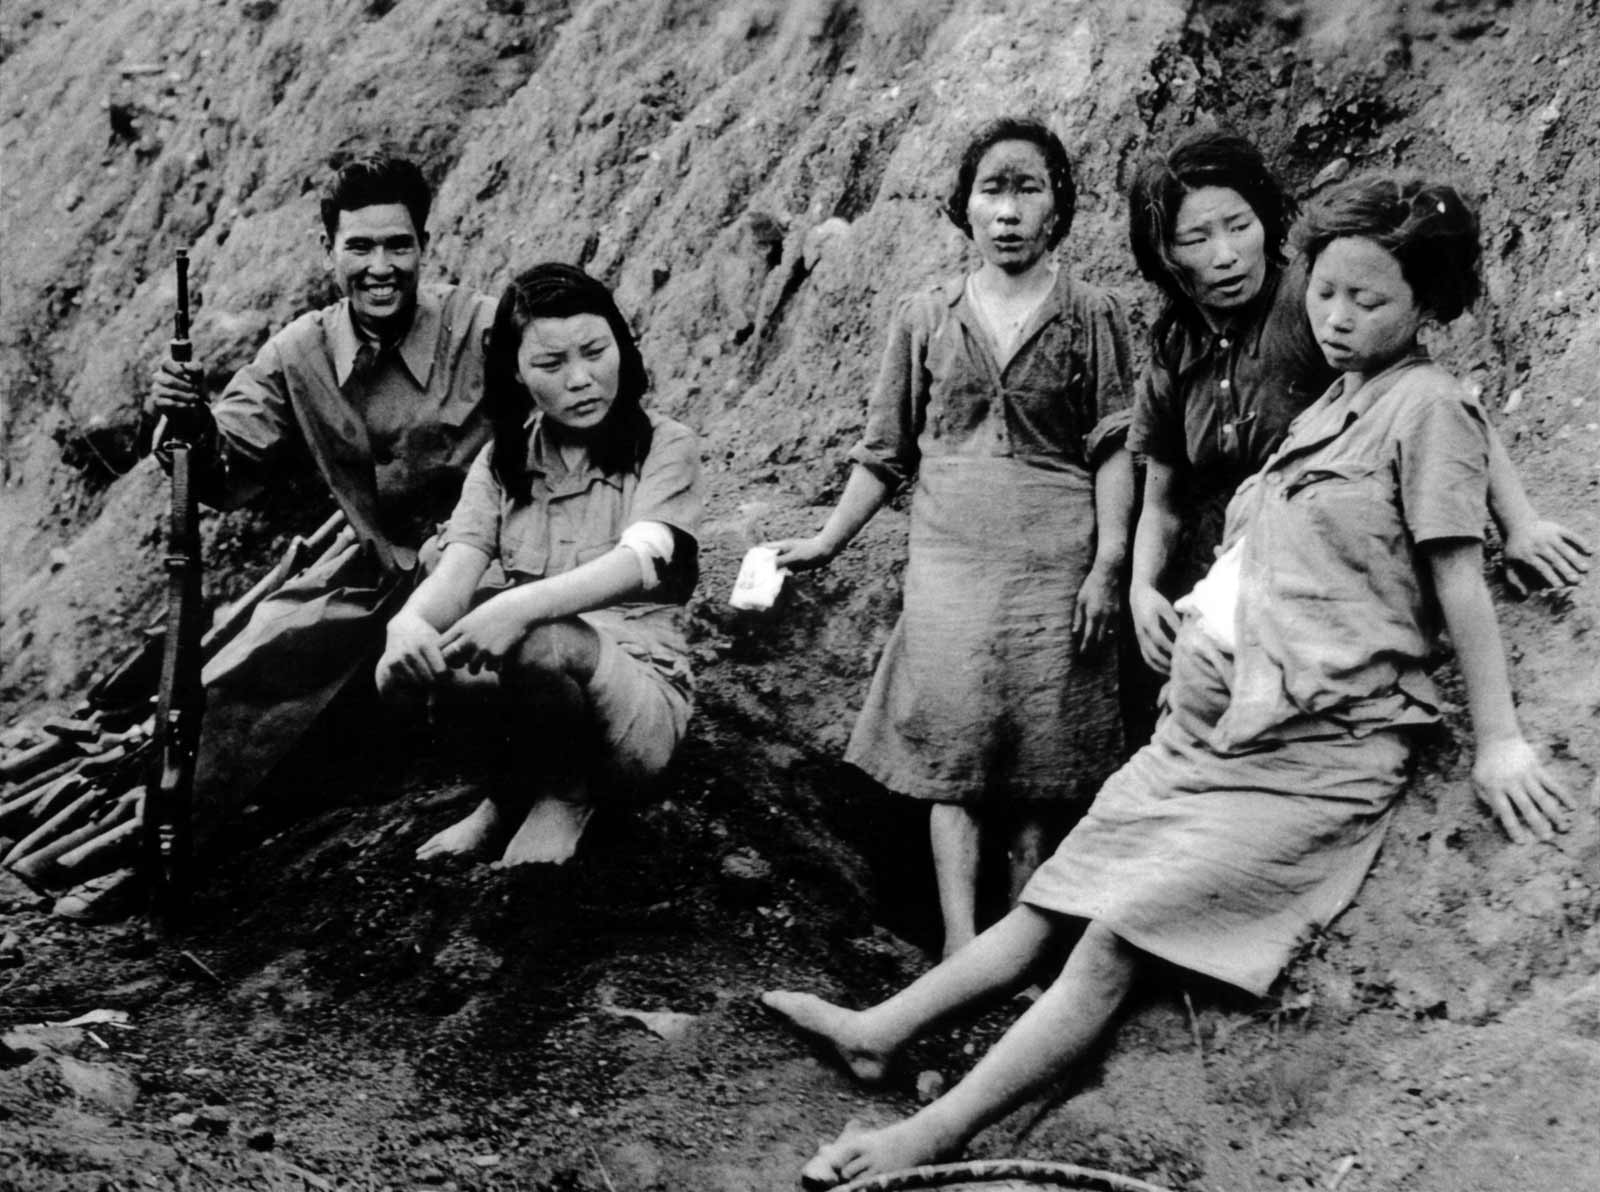 Comfort women stories